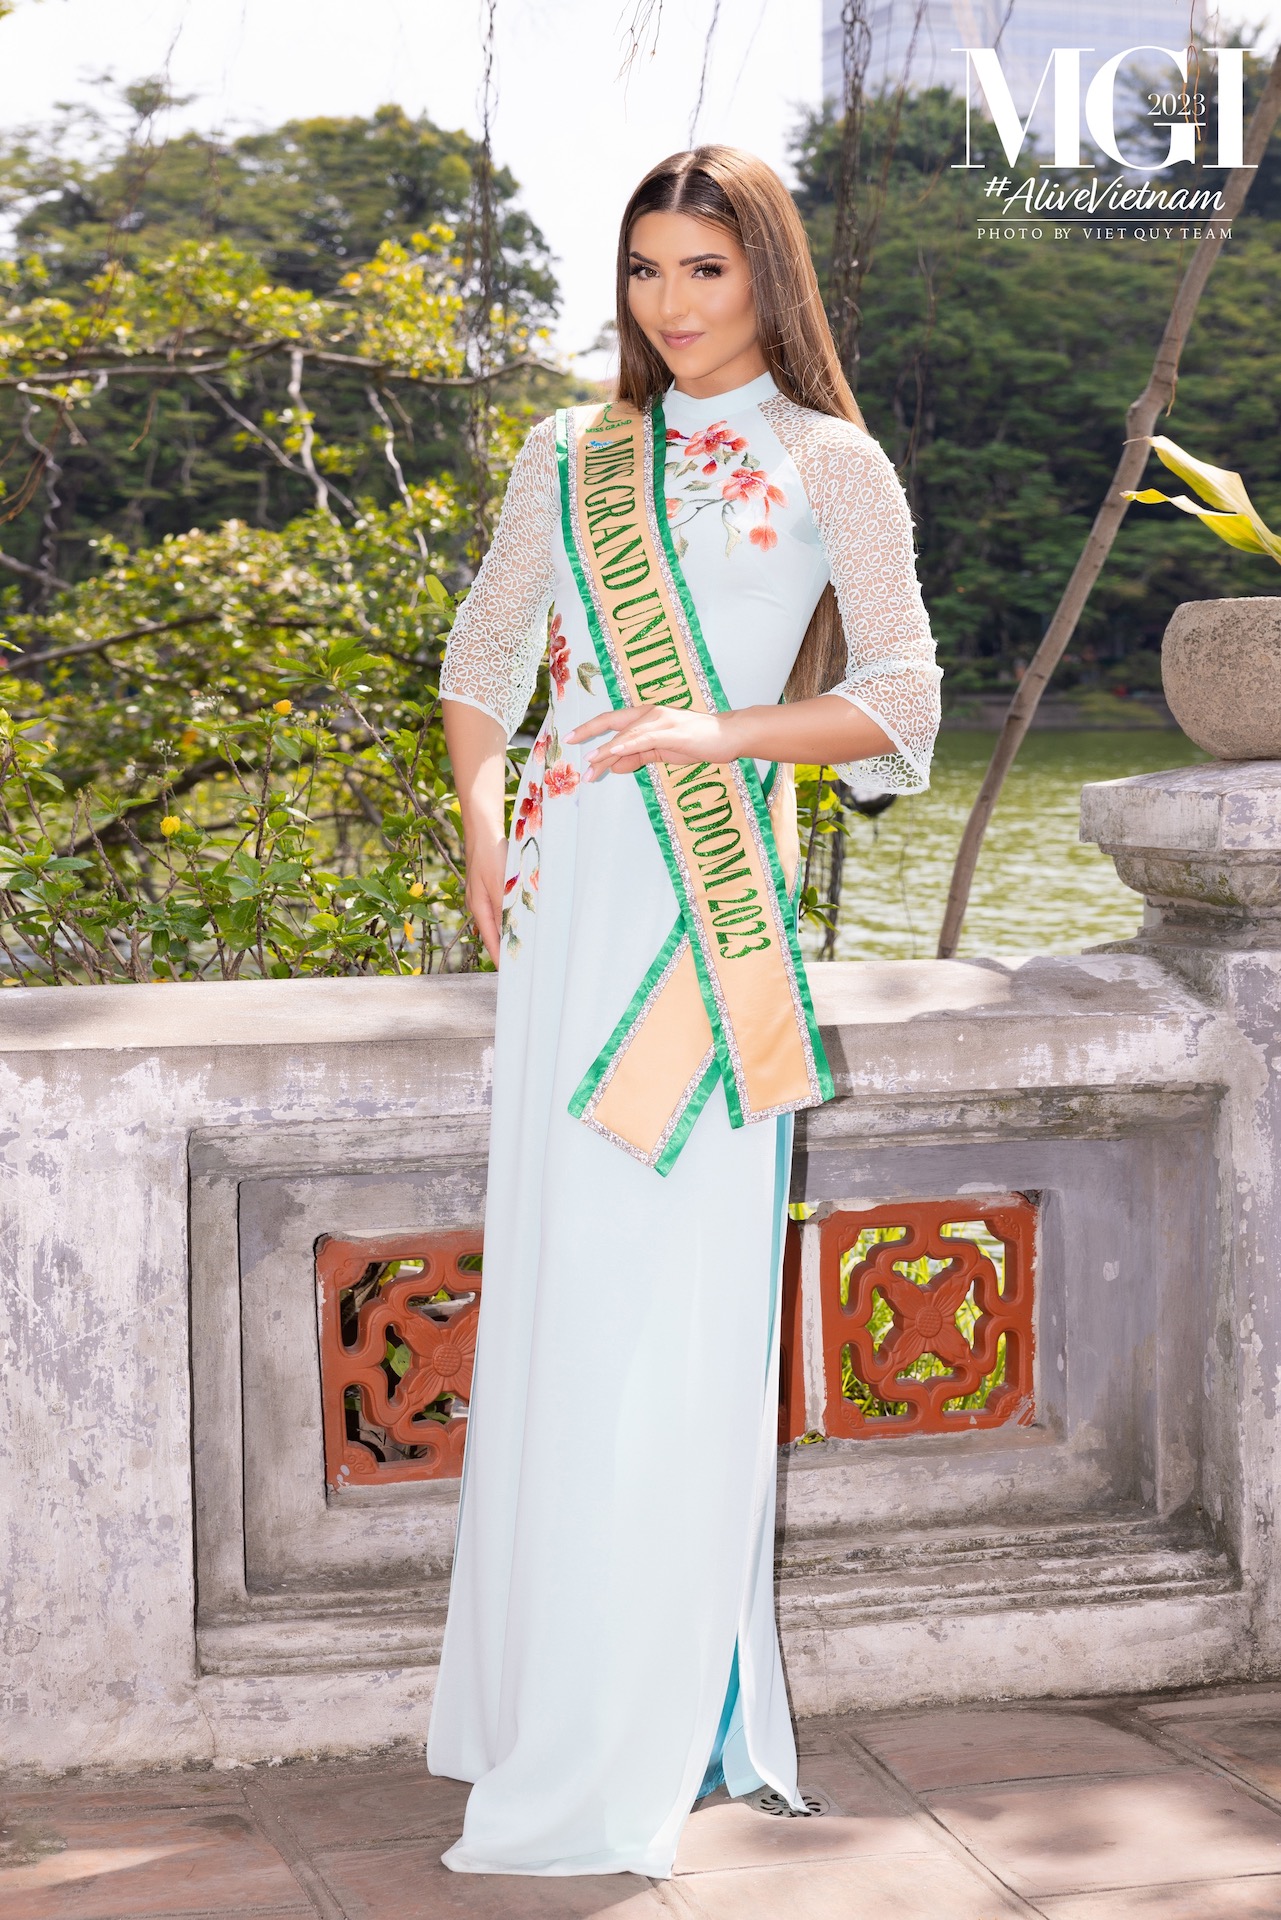 Dàn mỹ nhân 'Miss Grand International 2023' khoe sắc với áo dài Việt Nam   - Ảnh 12.